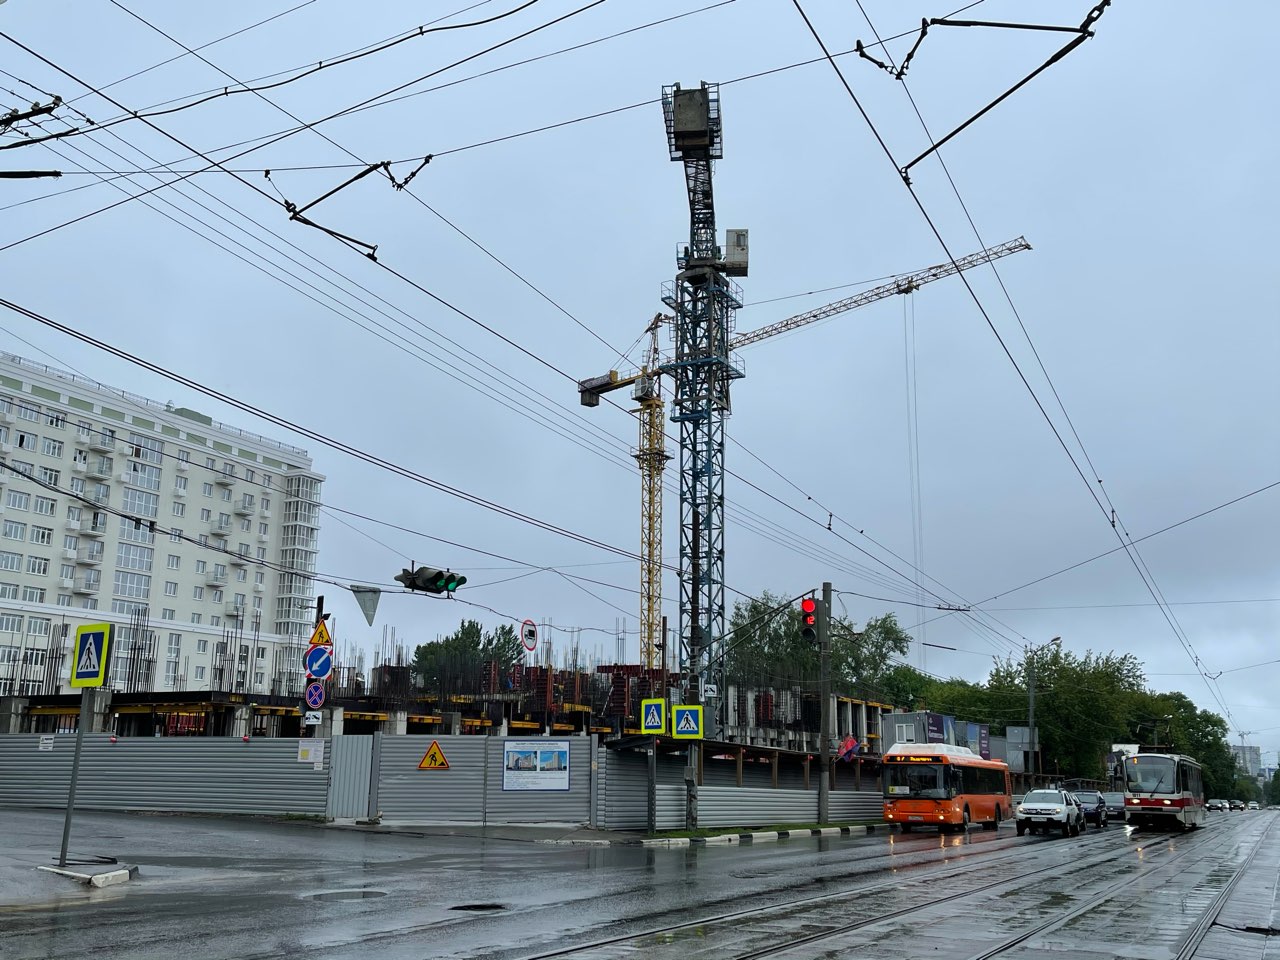 Нижний Новгород планируют перевести на экологичный общественный транспорт - фото 1